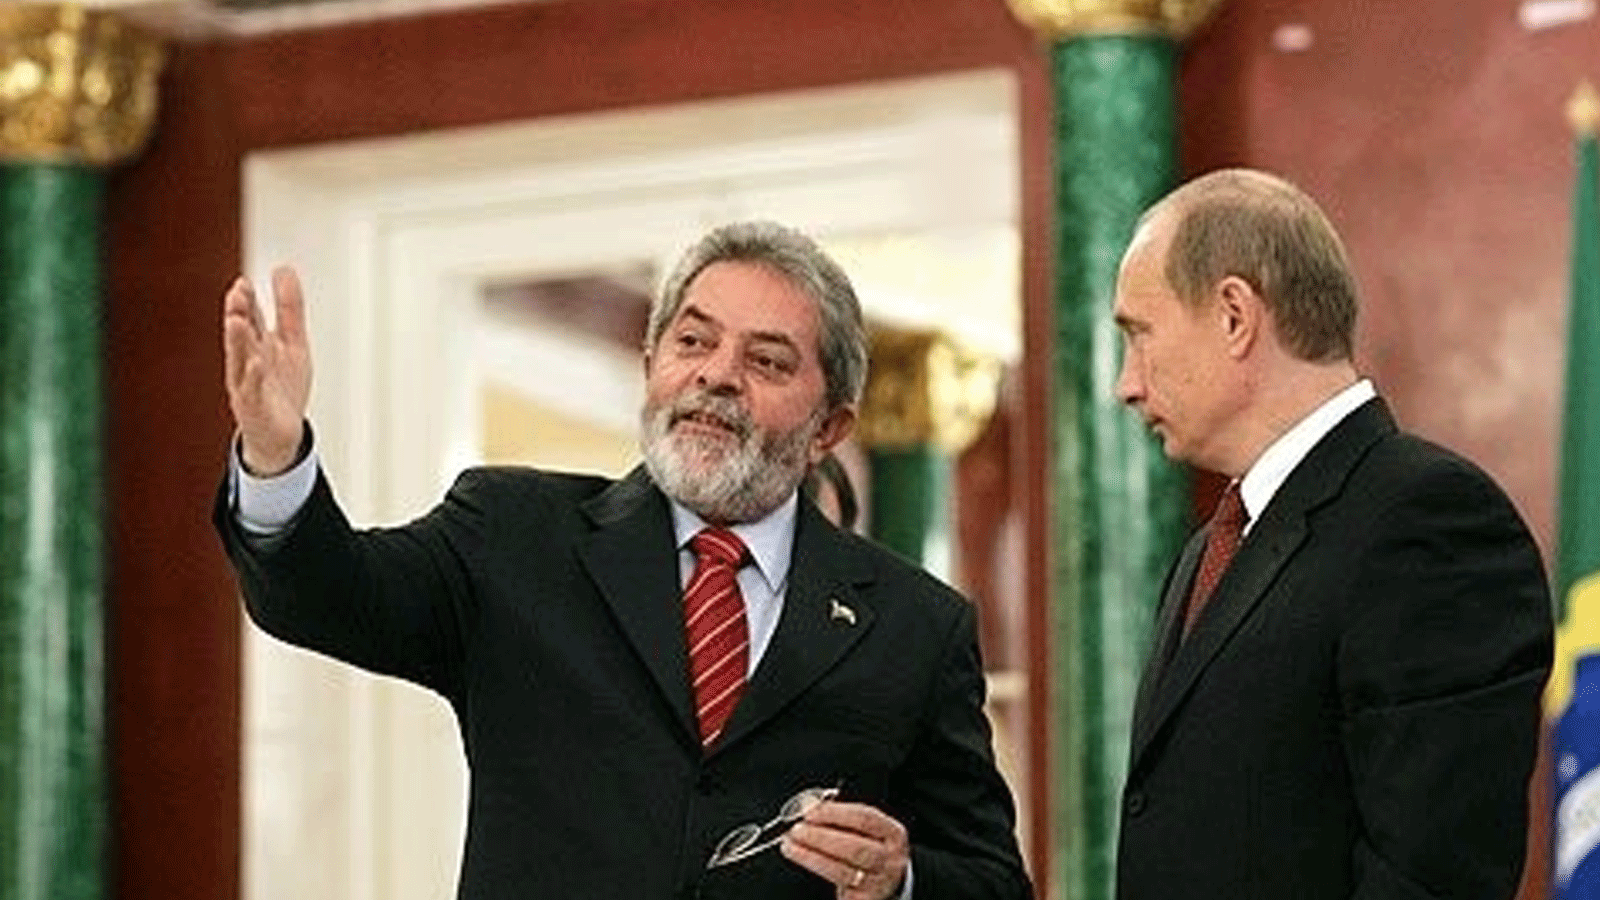 صورة أرشيفية تجمع الرئيسين الروسي فلاديمير بوتين والبرازيلي لولا دا سيلفا